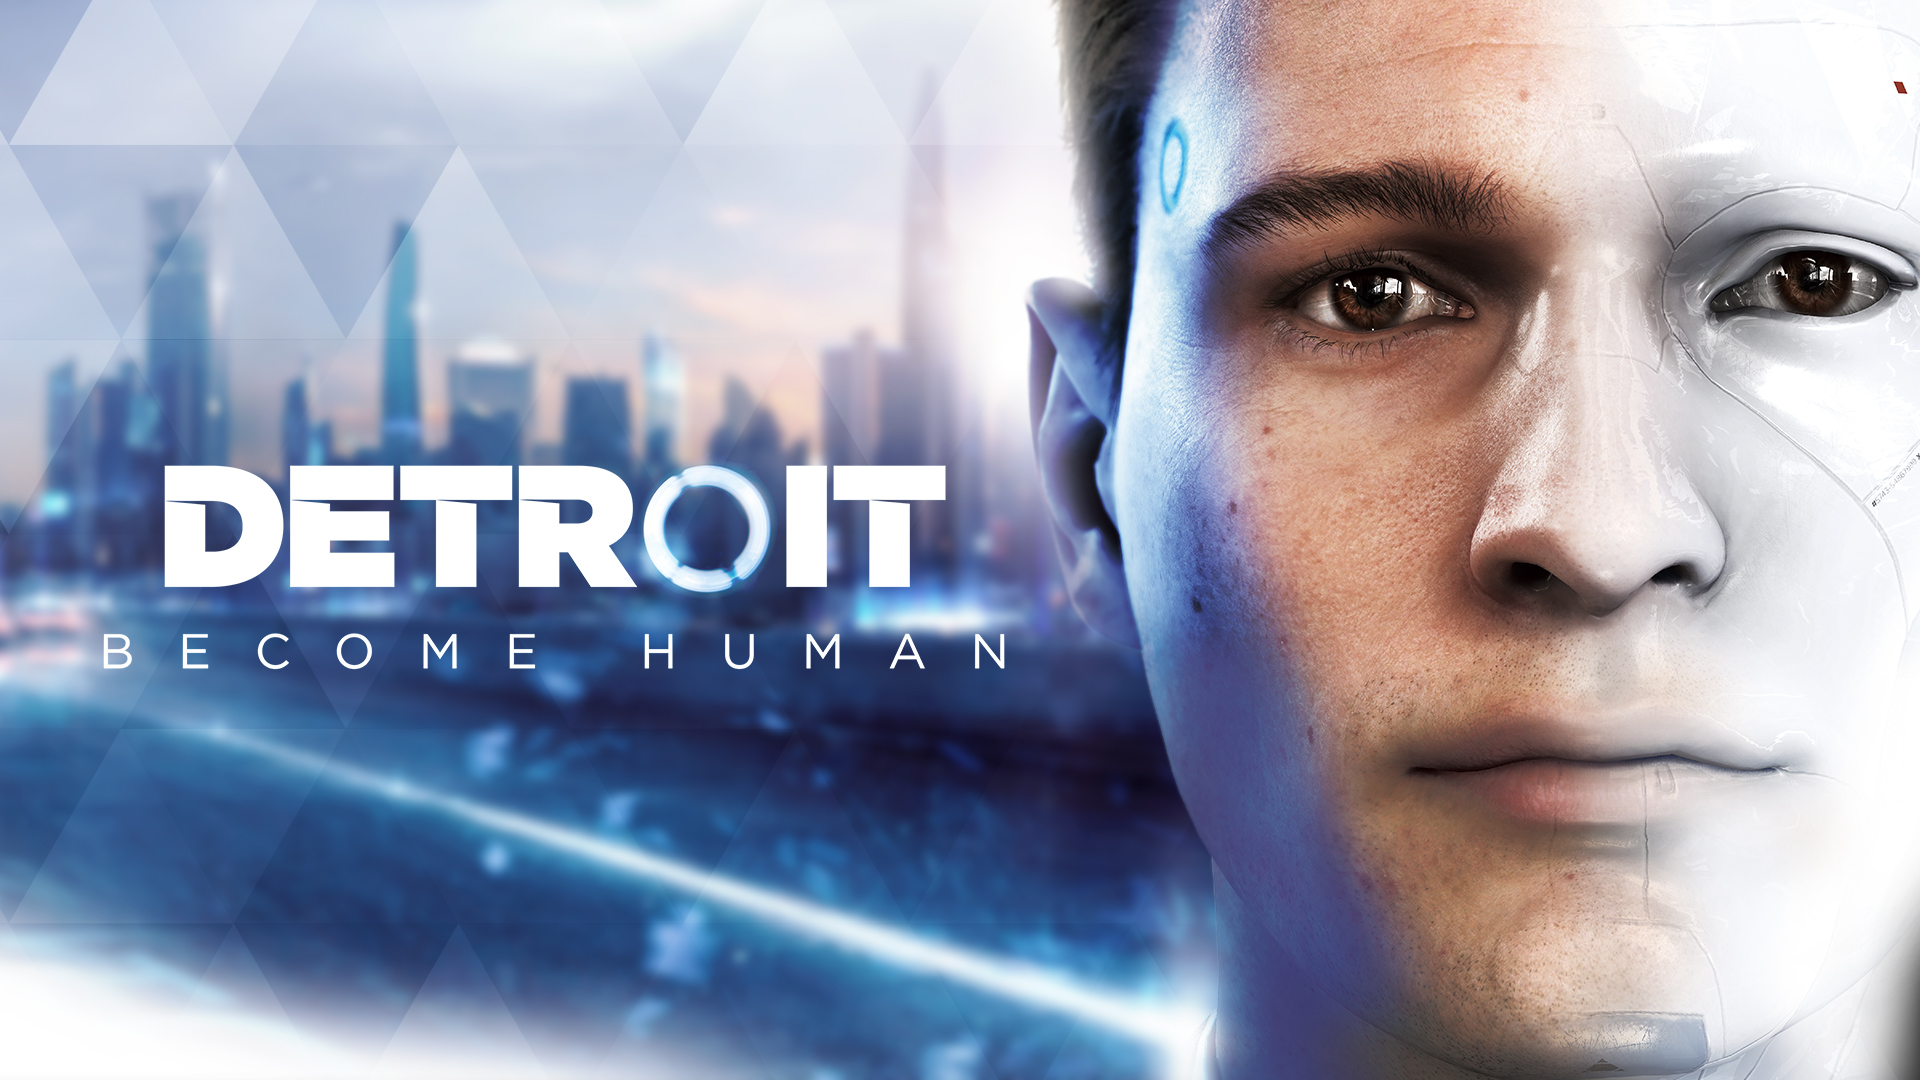 クアンティック ドリーム最新作 Detroit Become Human の発売日は5月25日 予約も早速開始されていまっせ